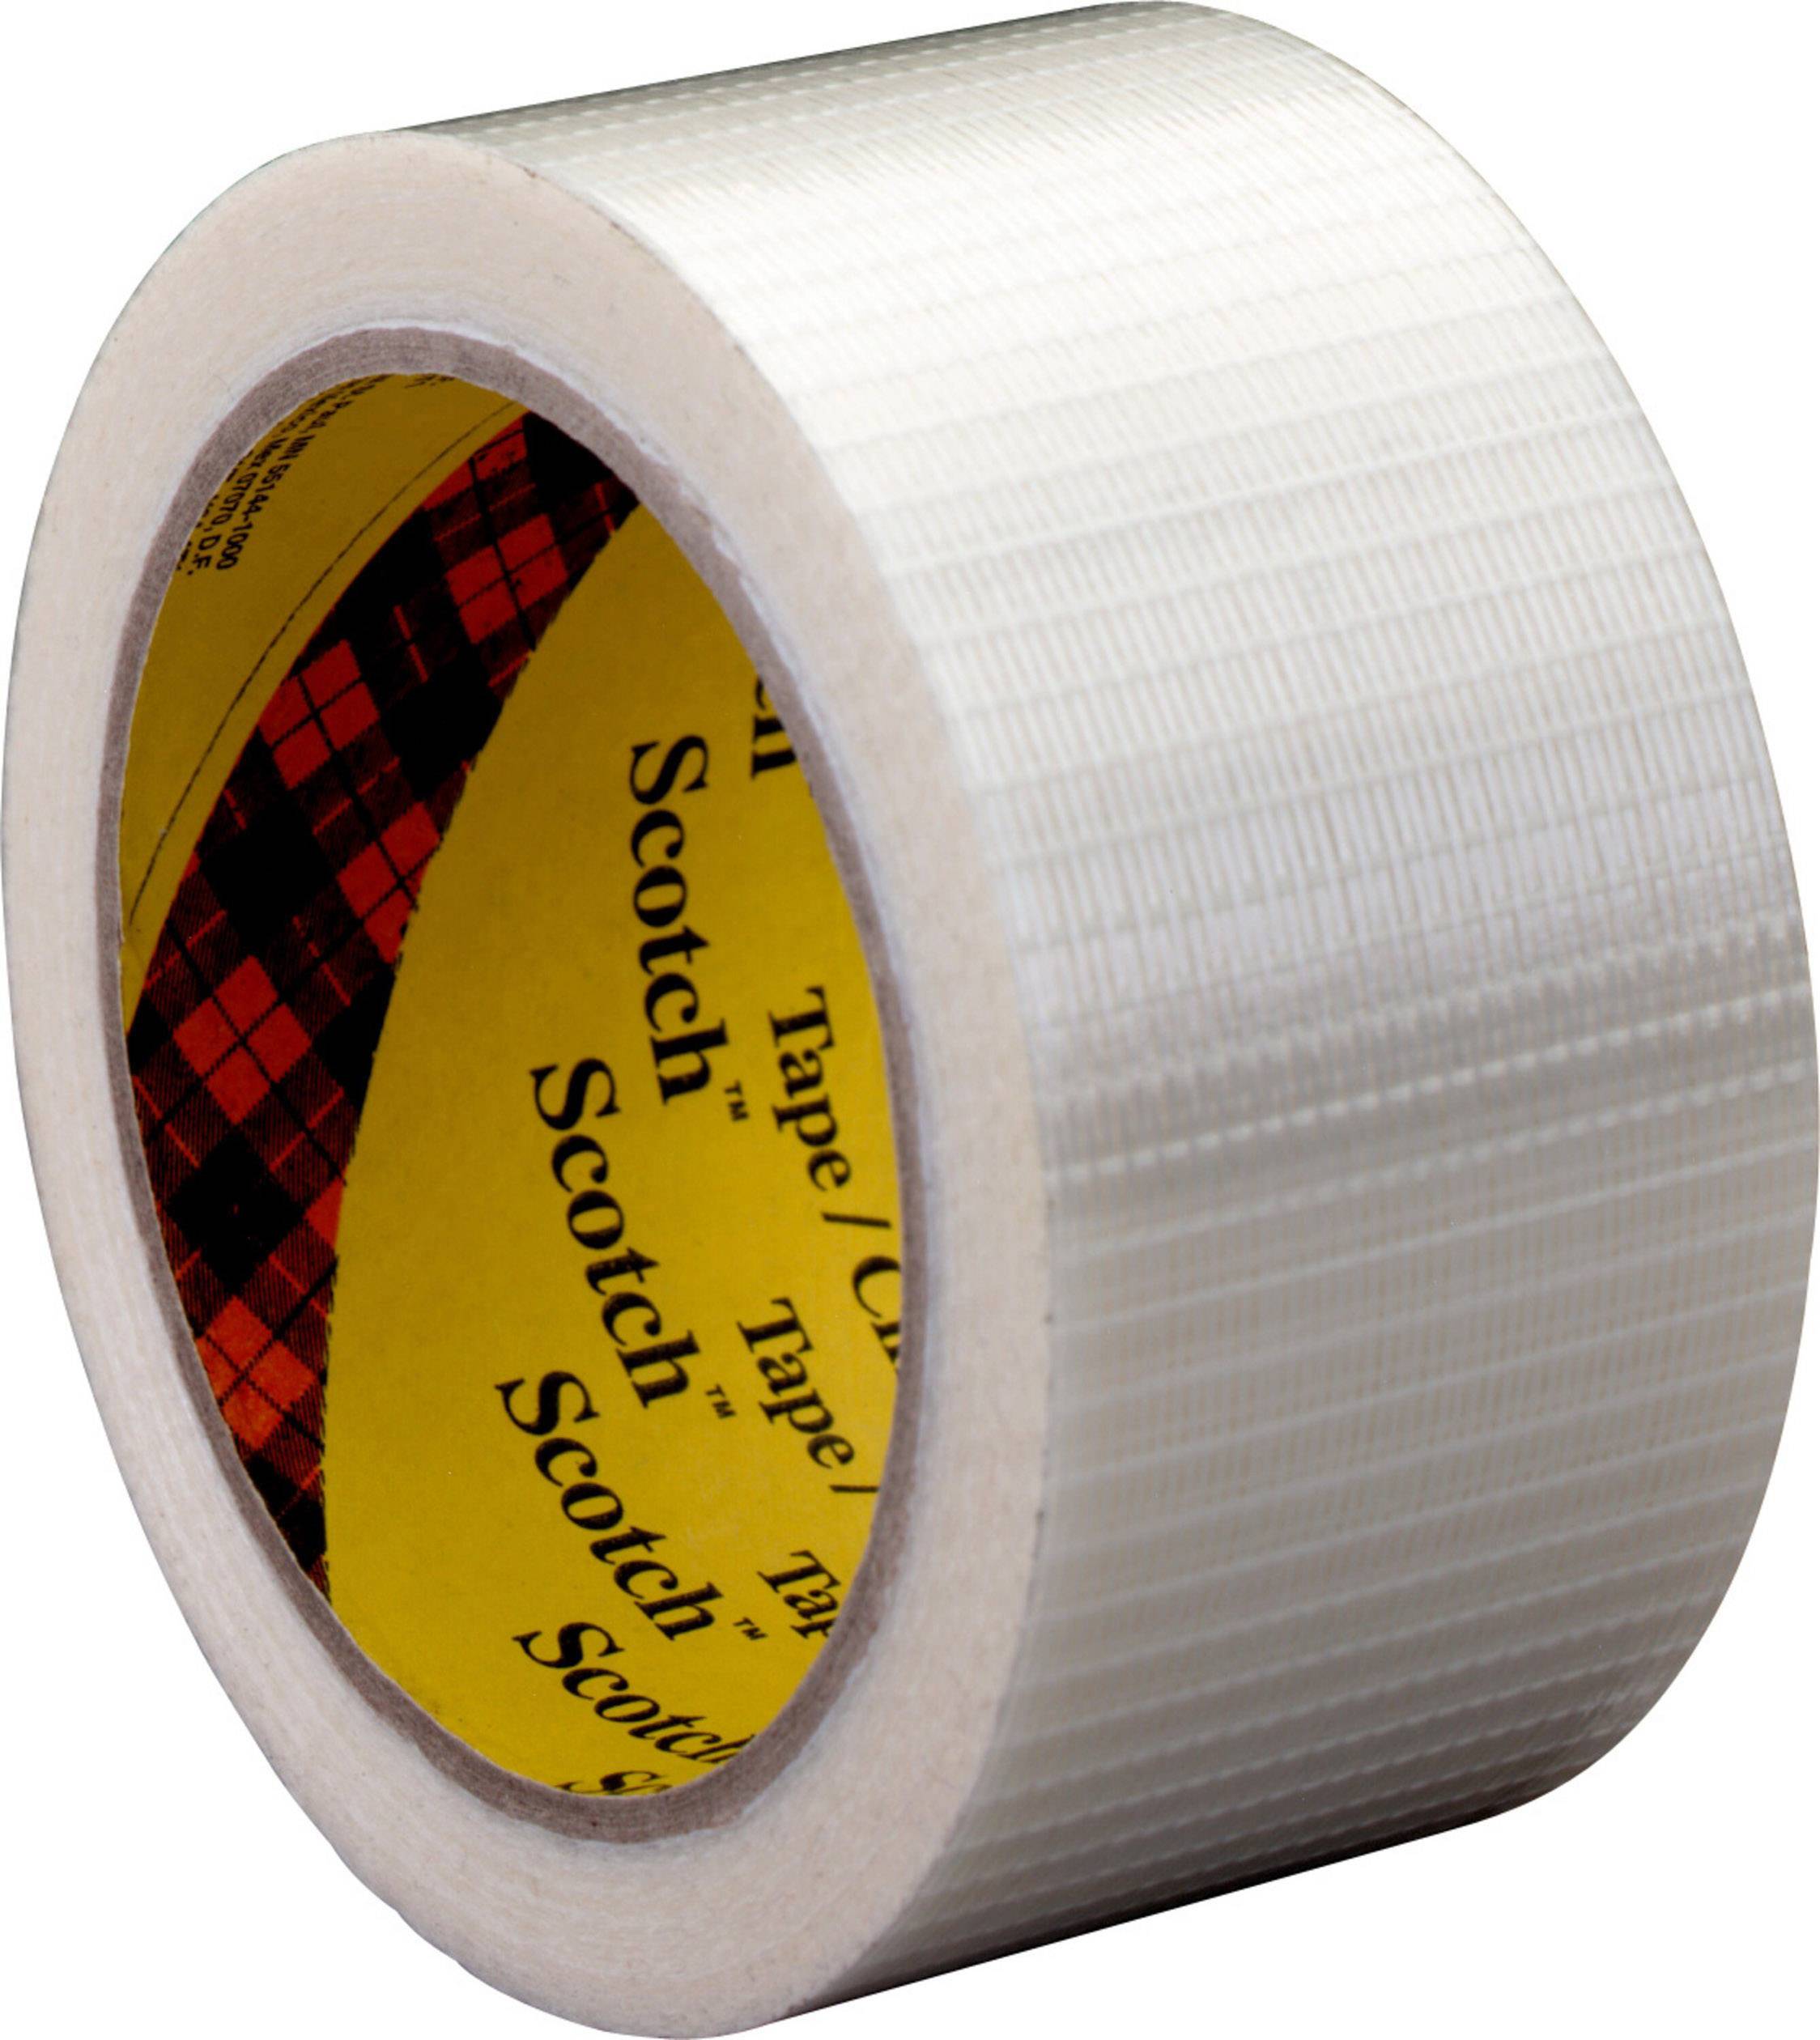 3M Scotch Filament-Klebeband 8959, 75 mm x 50 m, transparent gepackt zu 12 Rollen - 12 Stück (895975